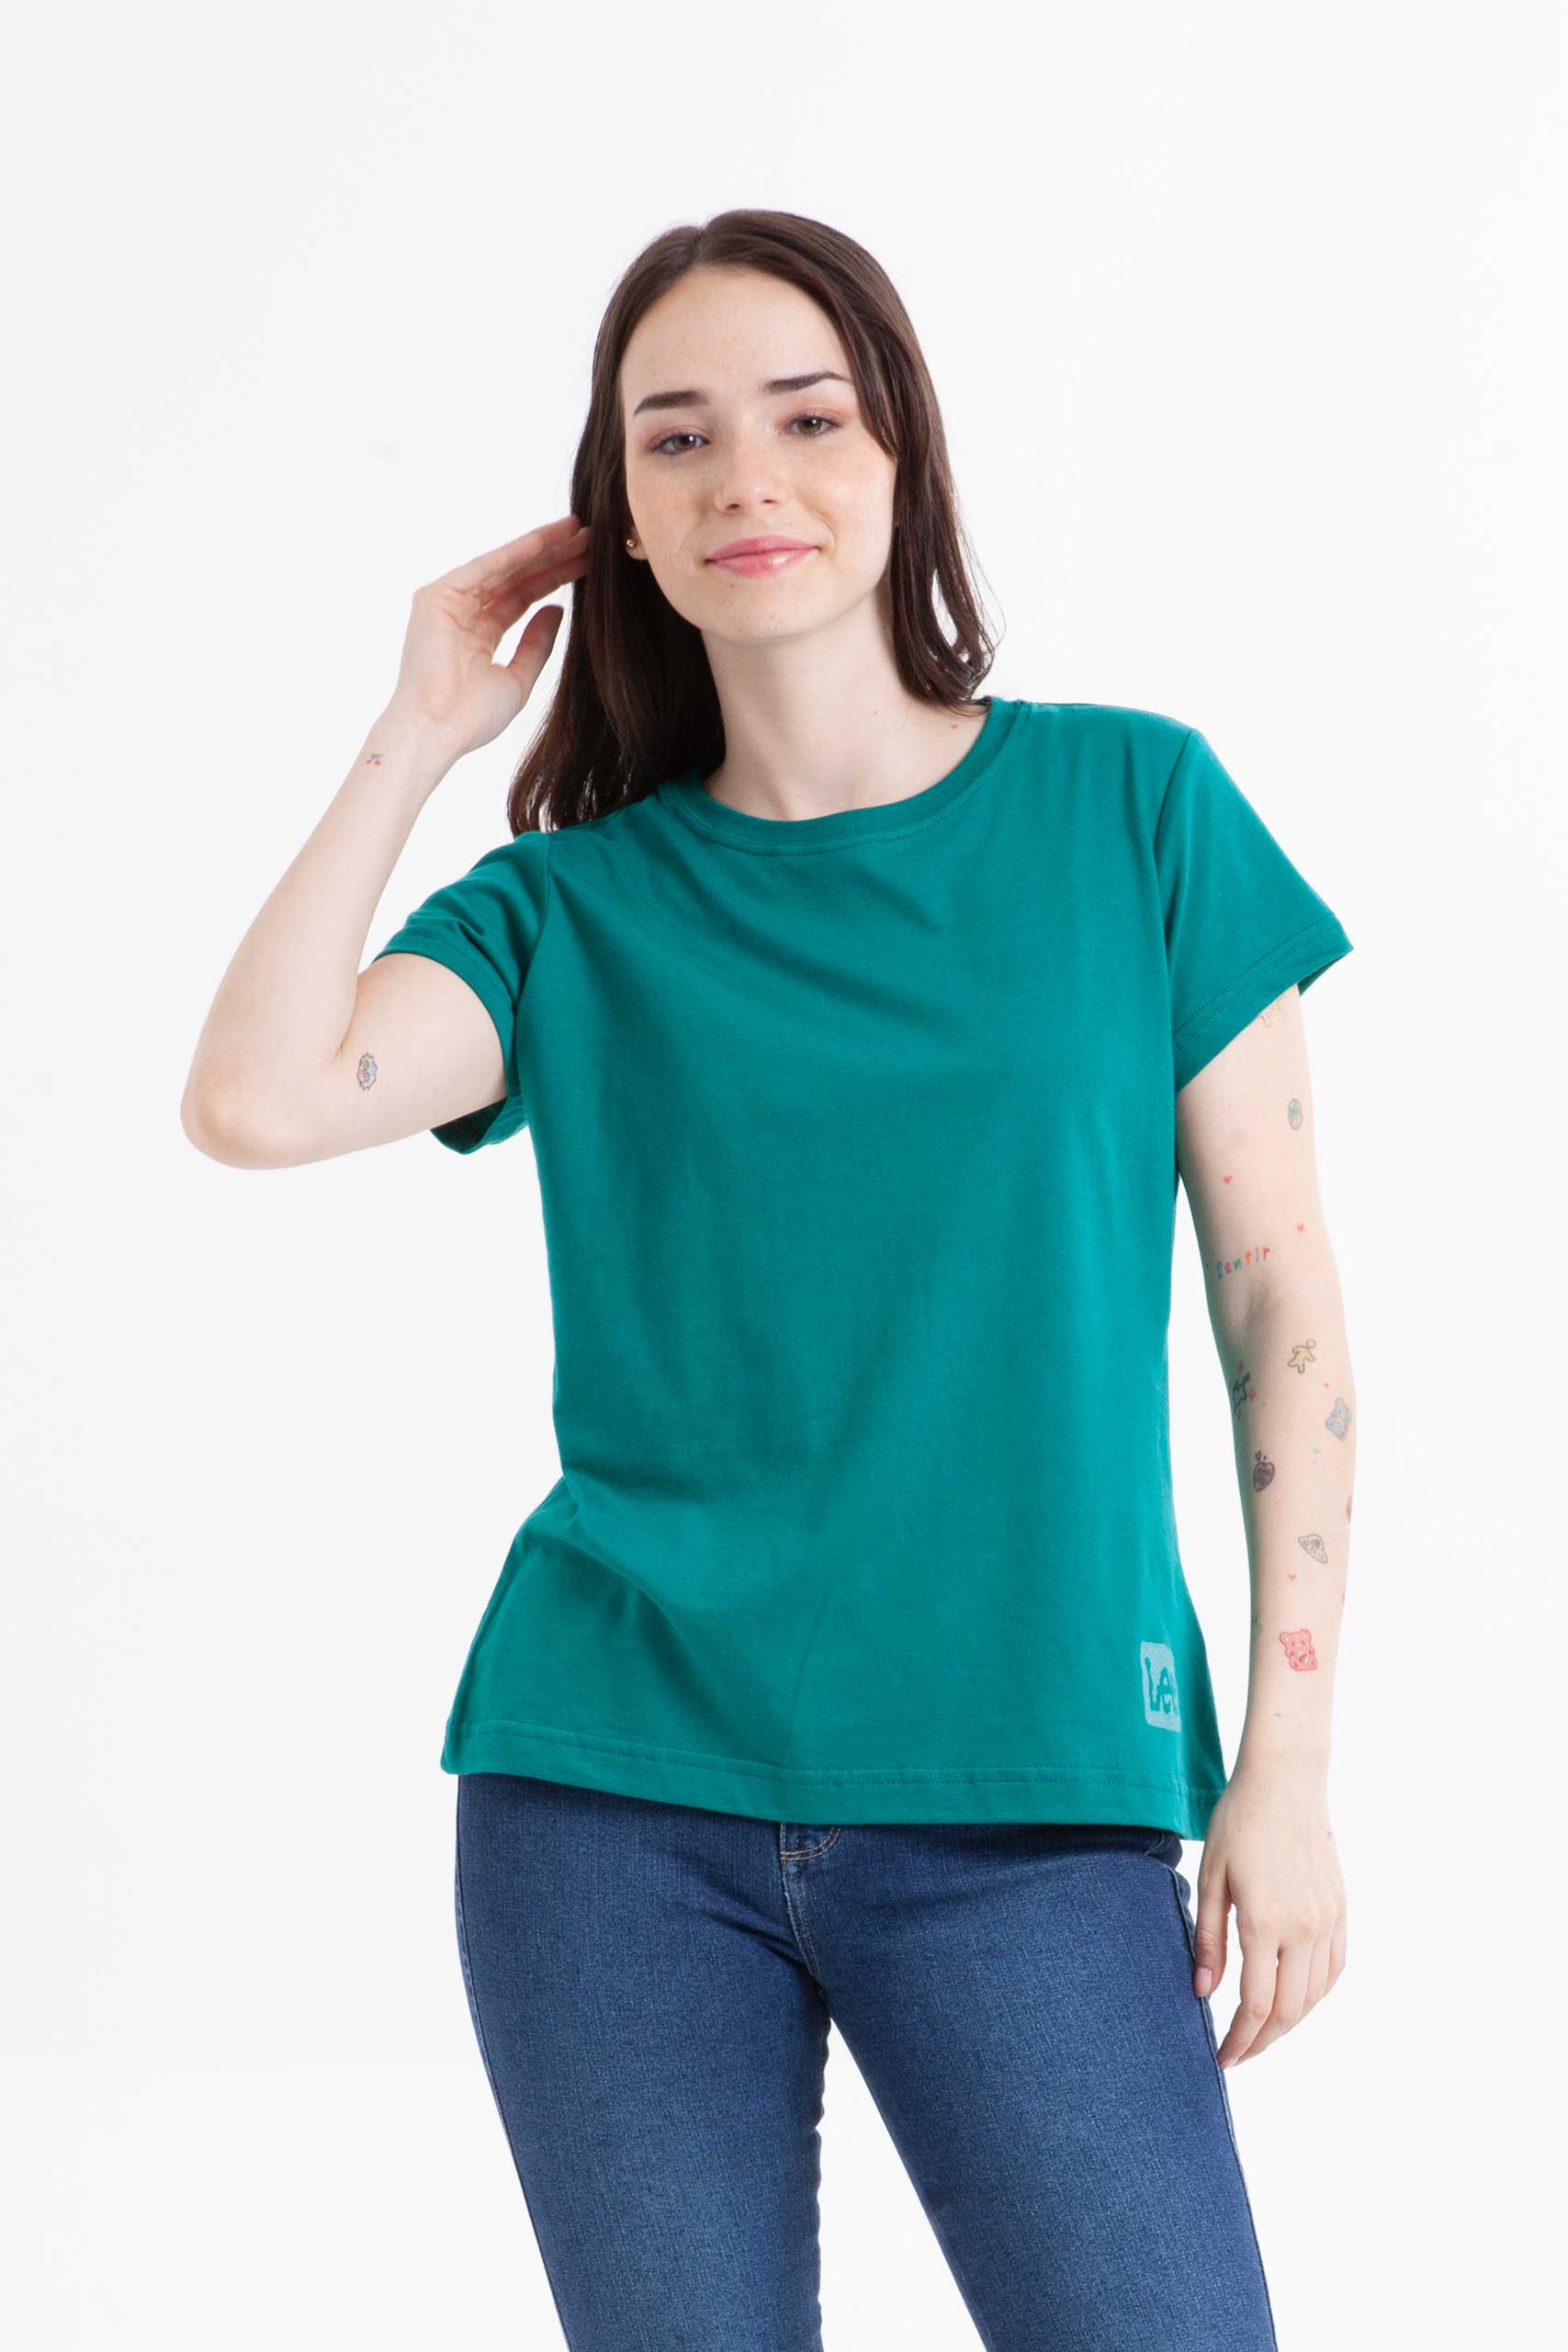 Vista frontal de camiseta color verde marca lee.